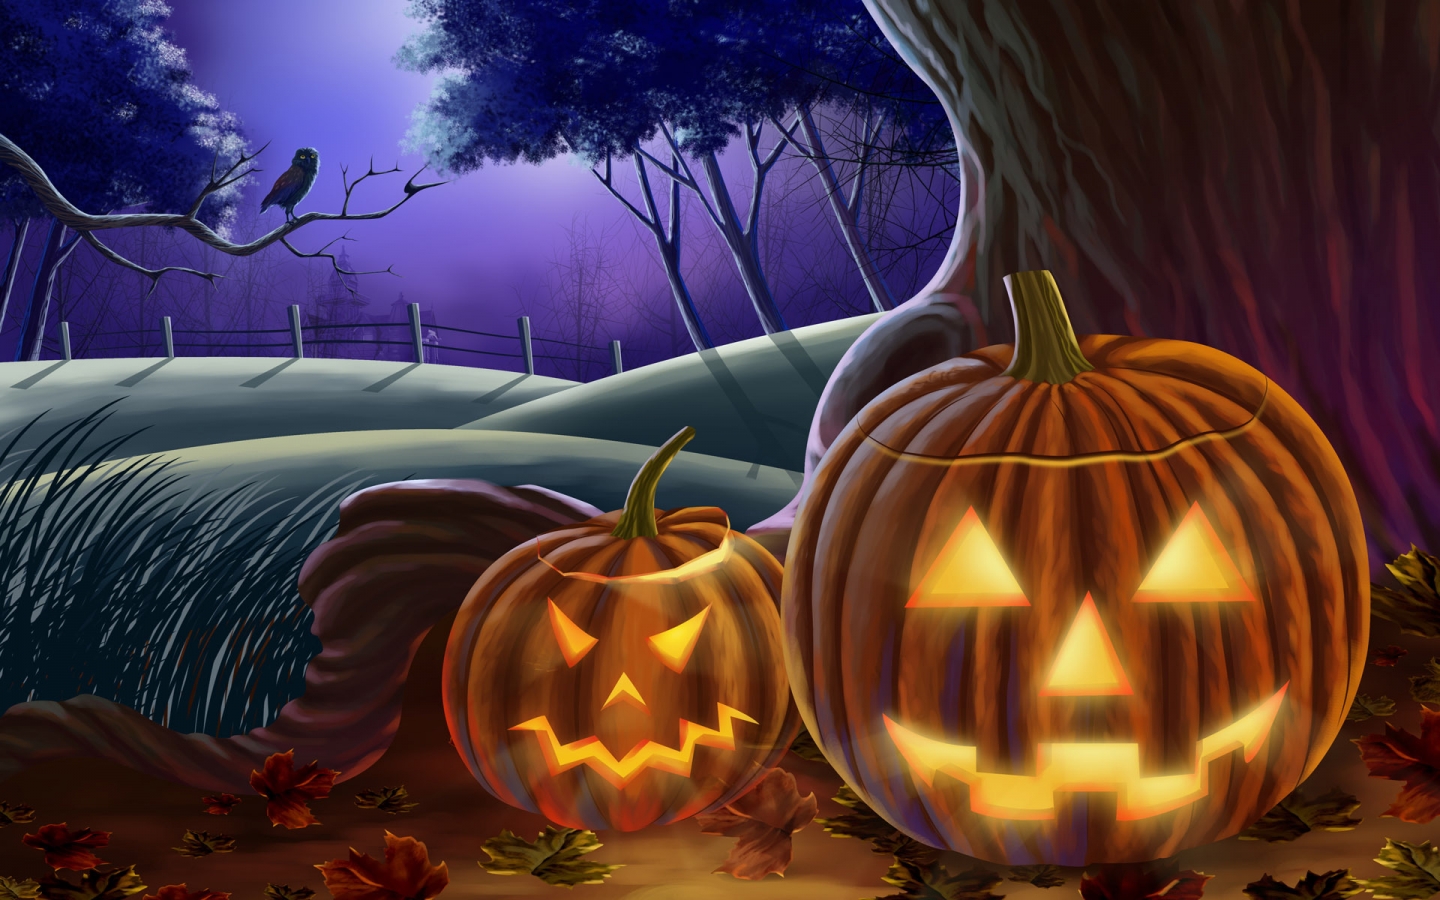 Illuminated Pumpkins for Halloween for 1440 x 900 widescreen resolution